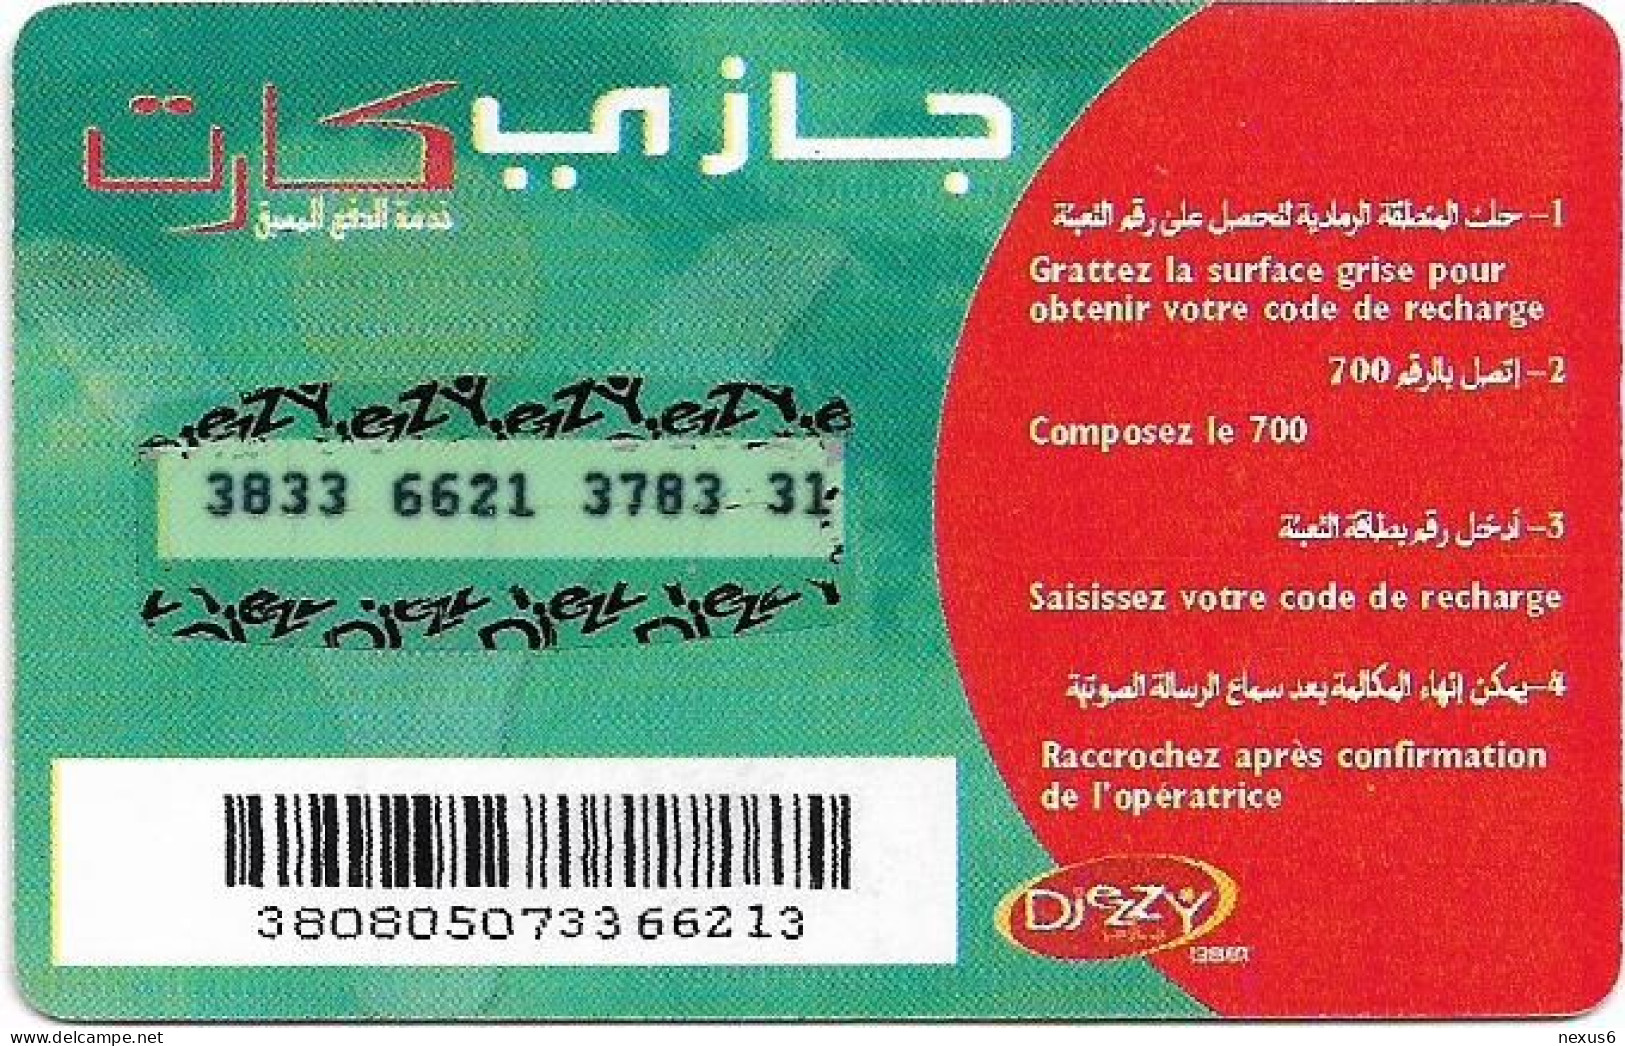 Algeria - Djezzy - Green Red ''La Vie'' (Big), Green PIN Background, GSM Refill 500DA, Used - Algérie